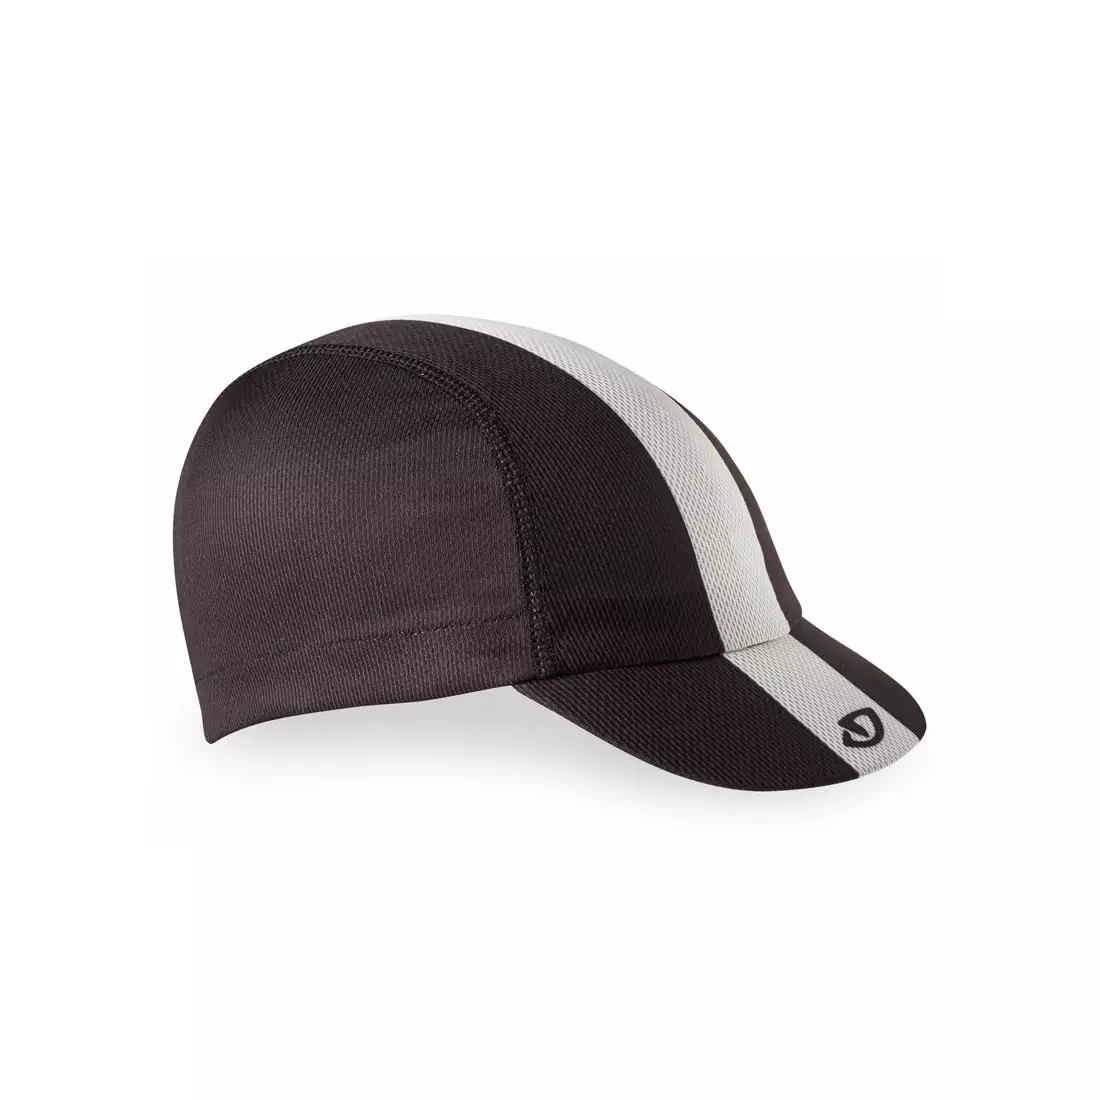 GIRO čepice na kolo s kšiltem CAP black white grey GR-7043336